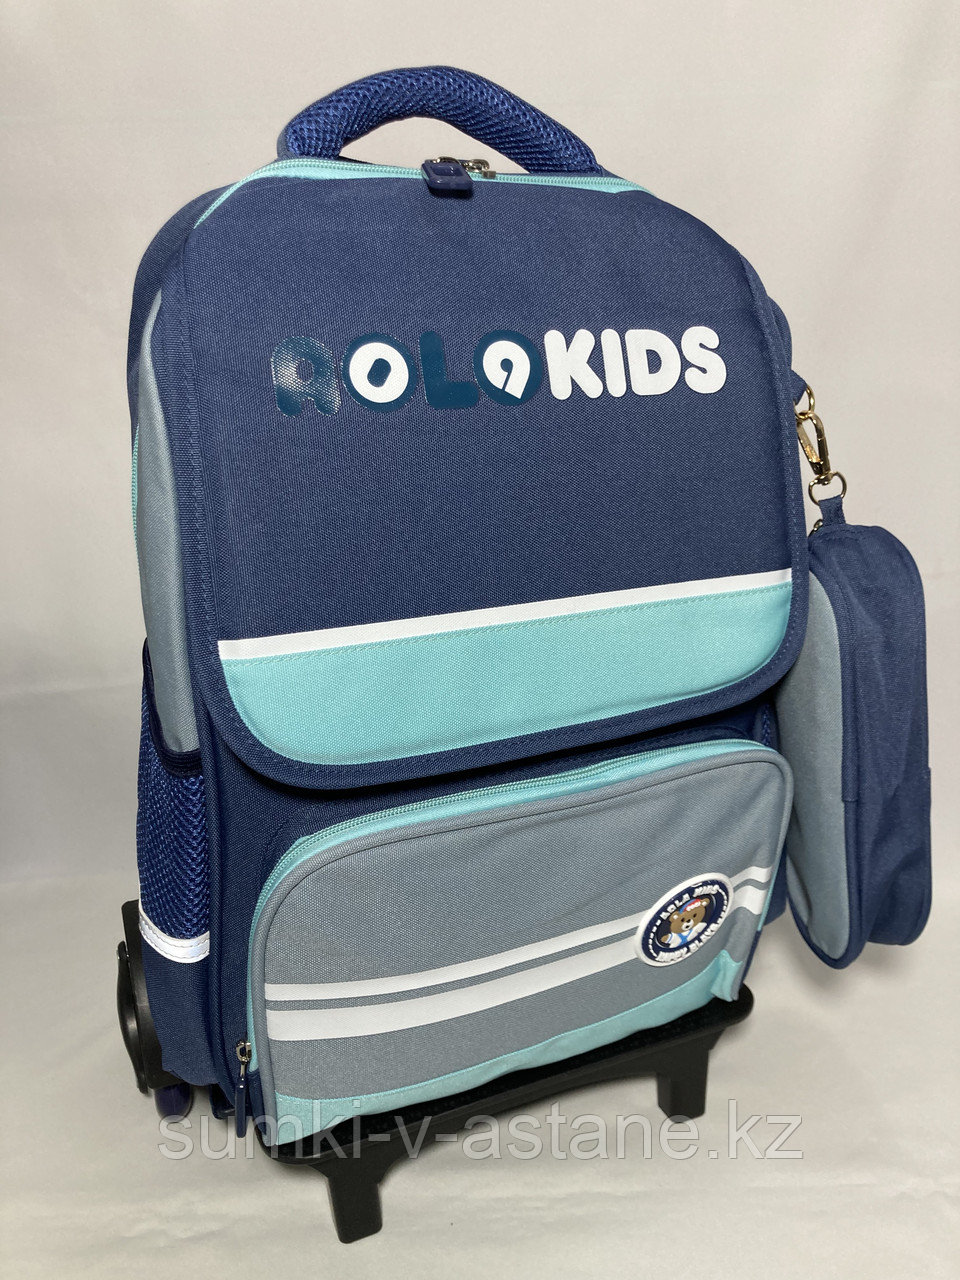 Школьный рюкзак на колёсах для мальчика, с выдвижной ручкой.